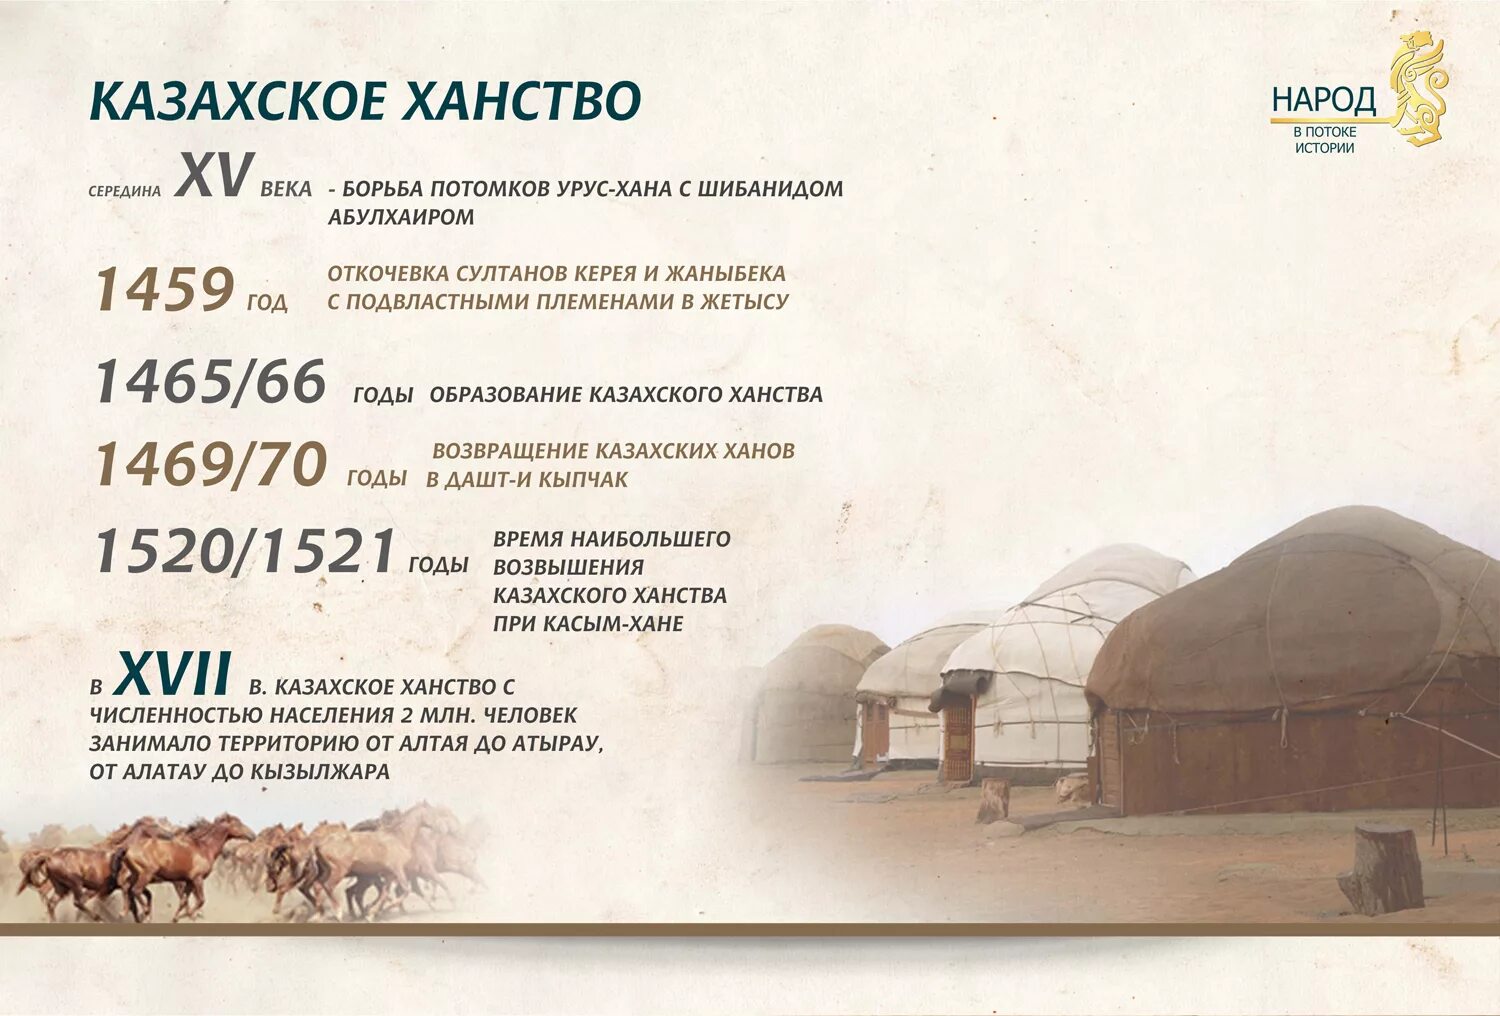 Ханы история казахстана. Образование казахского ханства. Год основания казахского ханства. Год образования казахского ханства. Когда образовалалось казахское ханство.